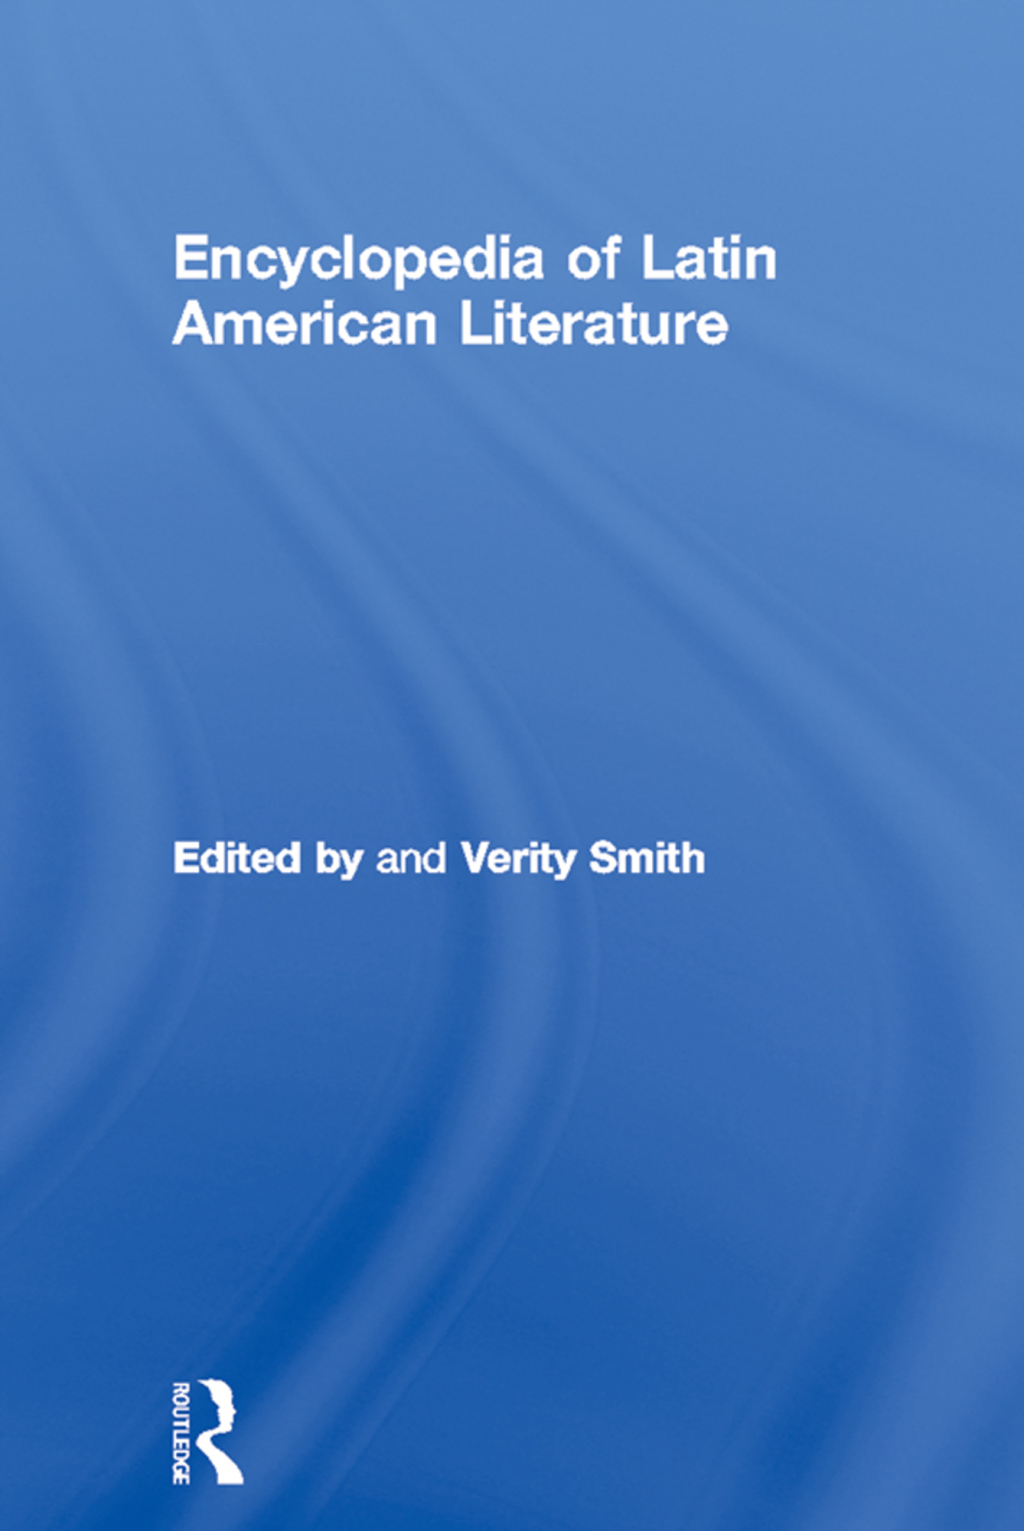 Encyclopedia of Latin American Literature (eBook) - Verity Smith